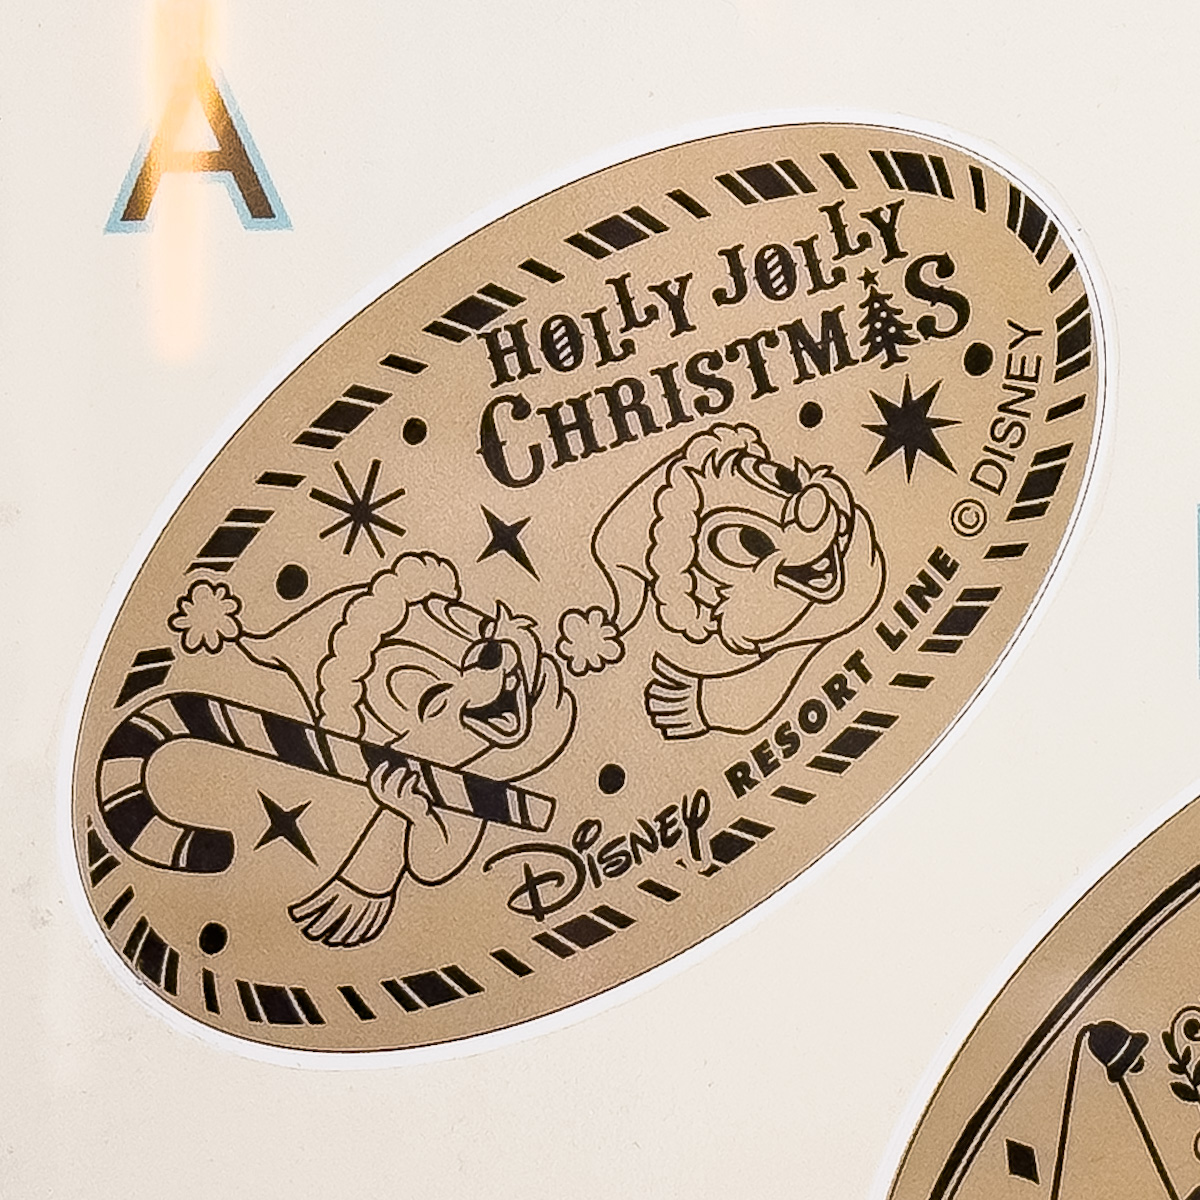 ベイサイド・ステーション　ディズニー・クリスマススーベニアメダル　チップ&デール